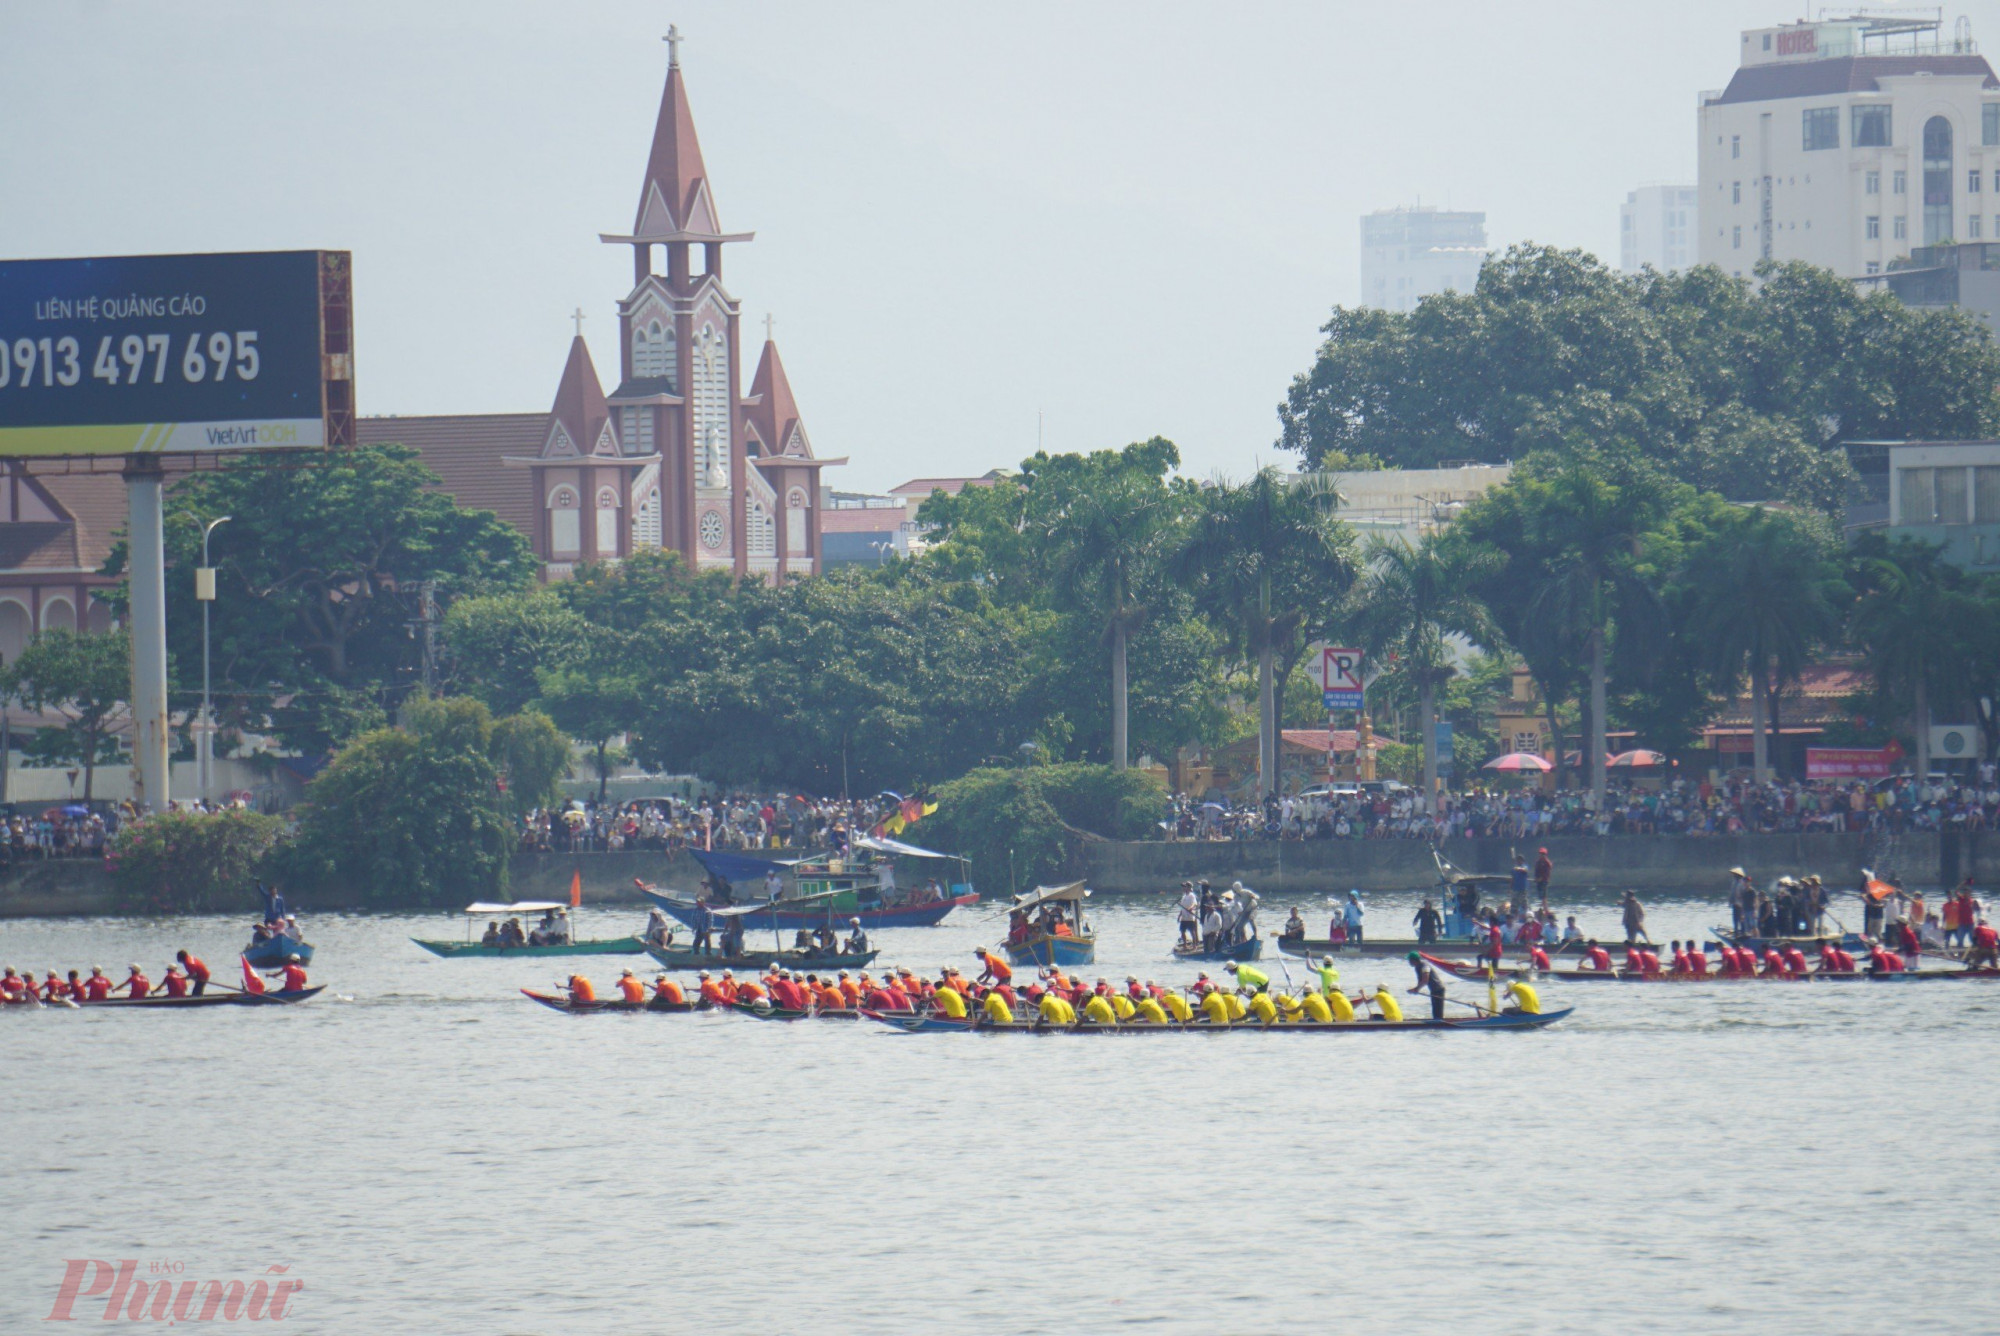 Điểm đặc biệt giải đua lần này đều sử dụng thuyền gỗ truyền thống quen thuộc với đời sống của ngư dân vùng Duyên hải Trung bộ.